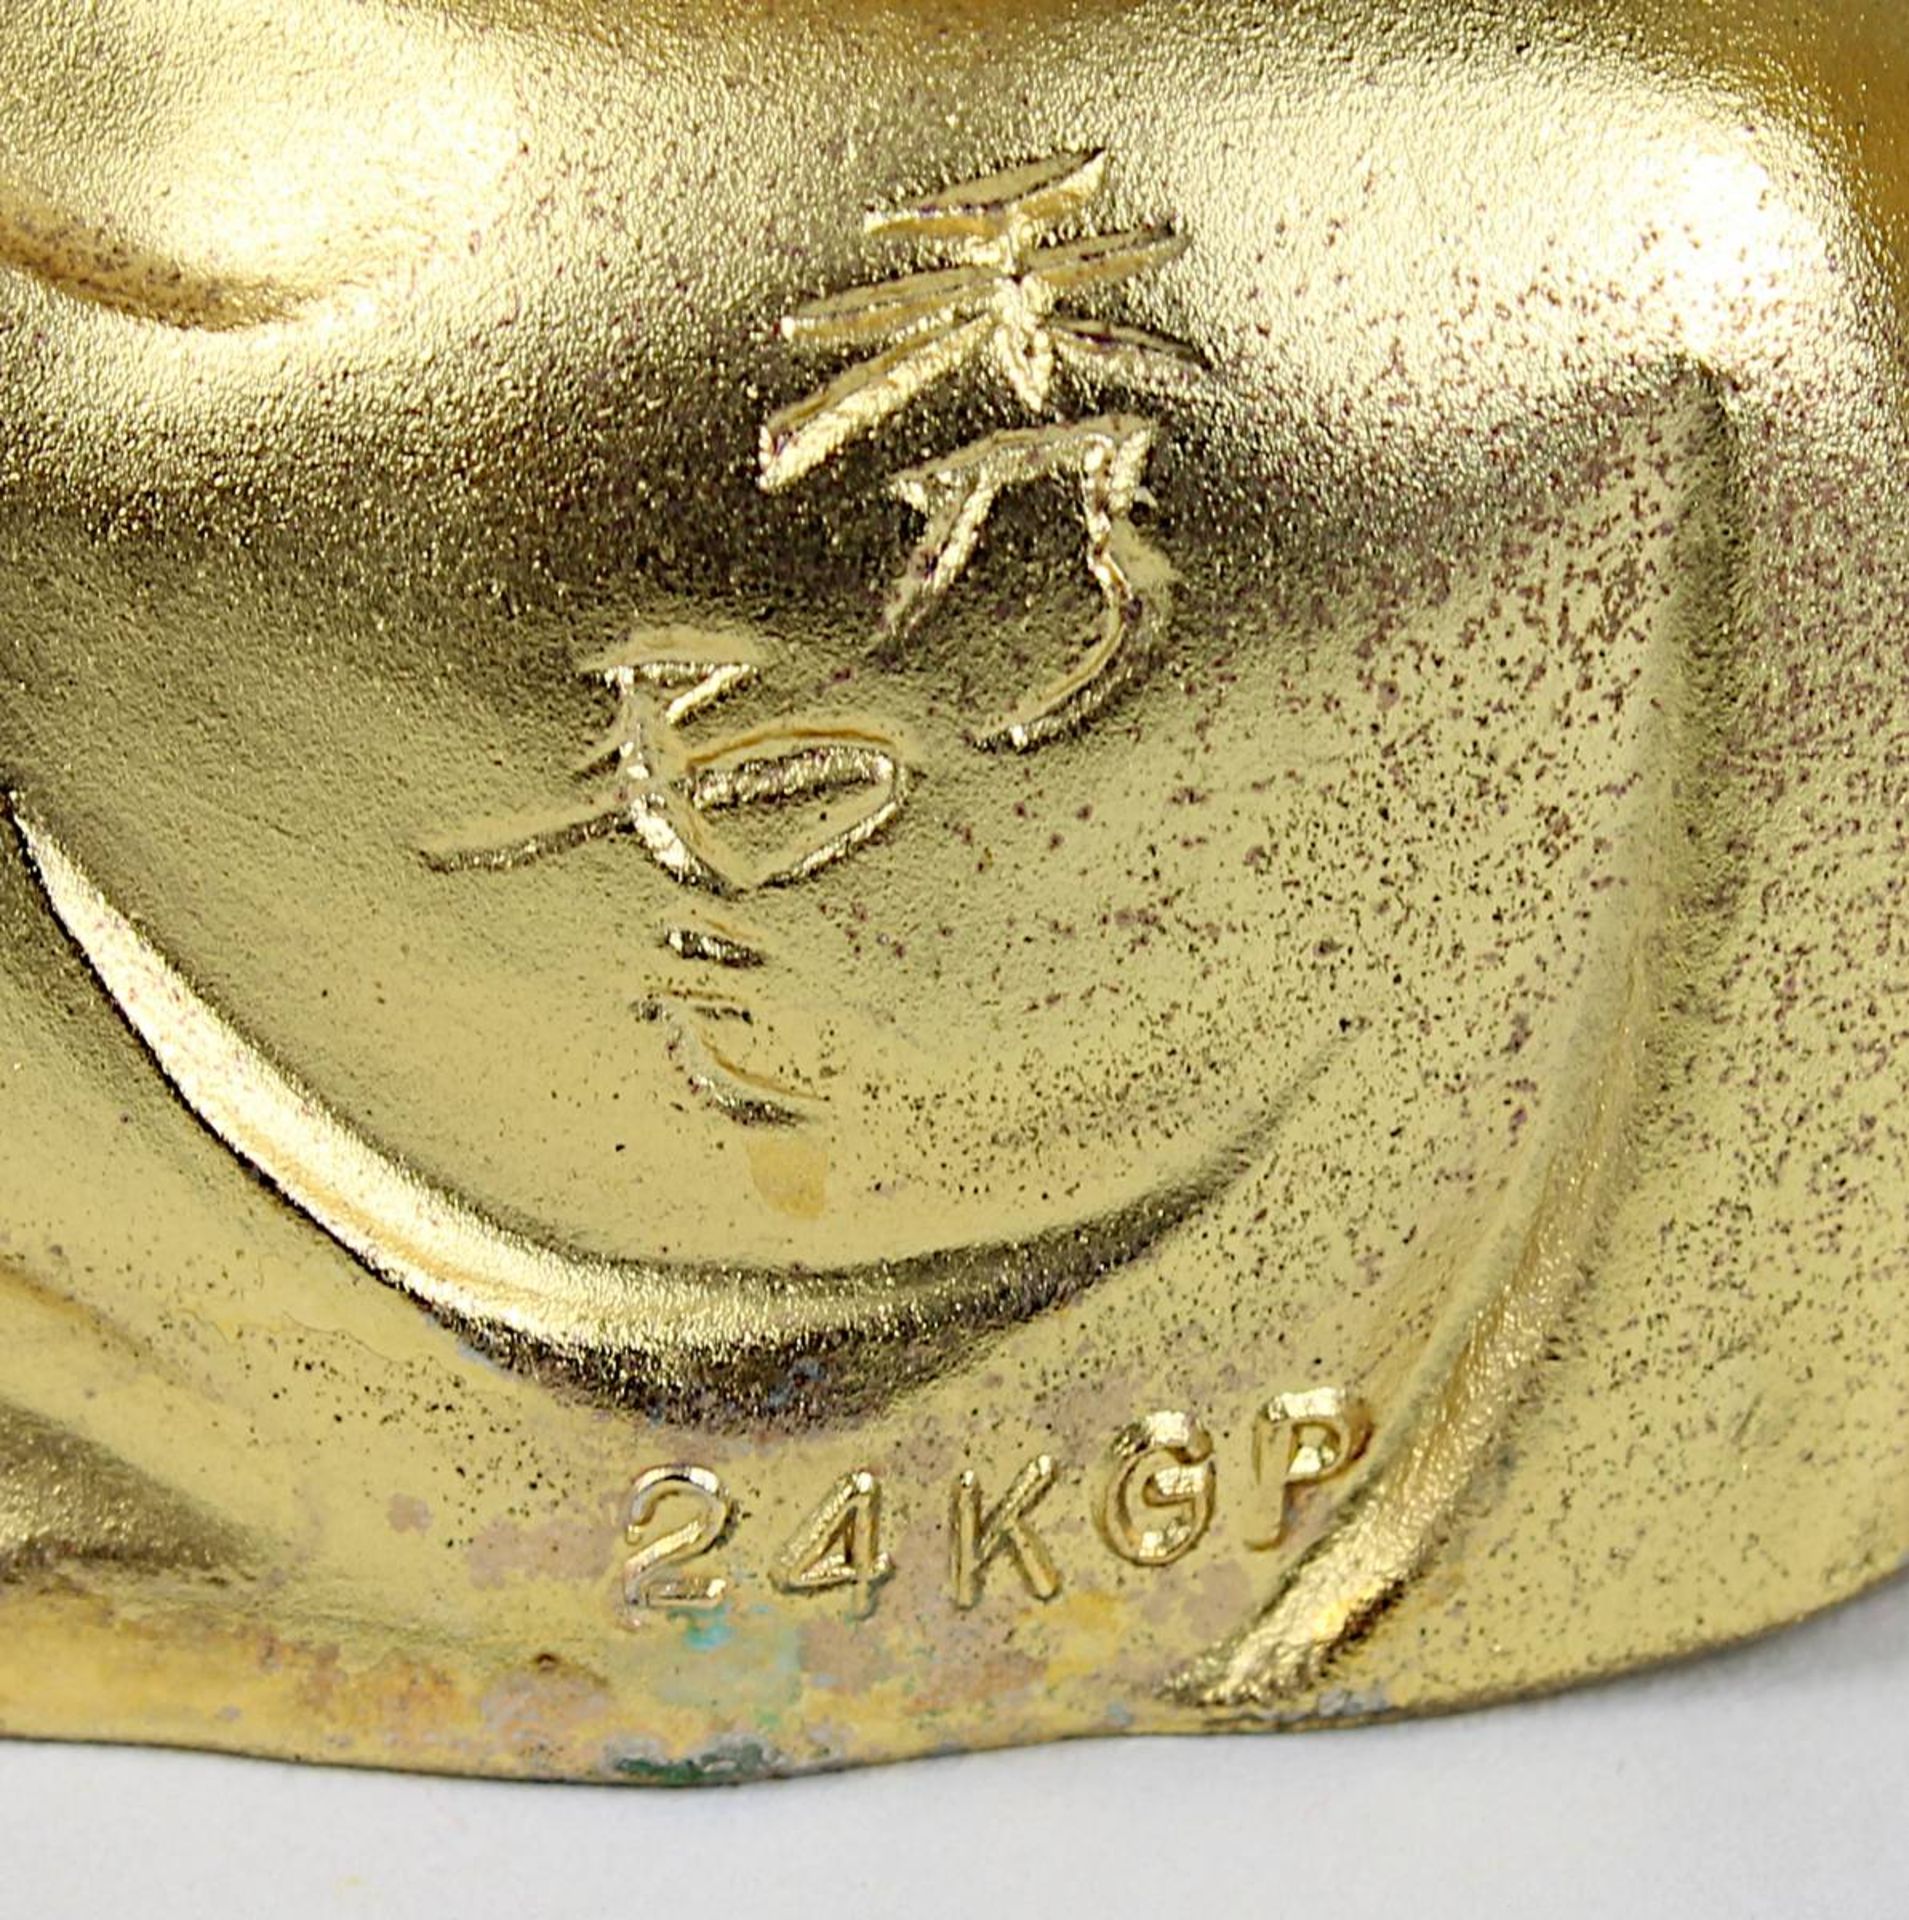 Zwei der sieben Glücksgötter, vergoldete Kupferlegierung, Takaoka, Japan neuzeitlich, H 10 bzw. 8 - Image 3 of 4